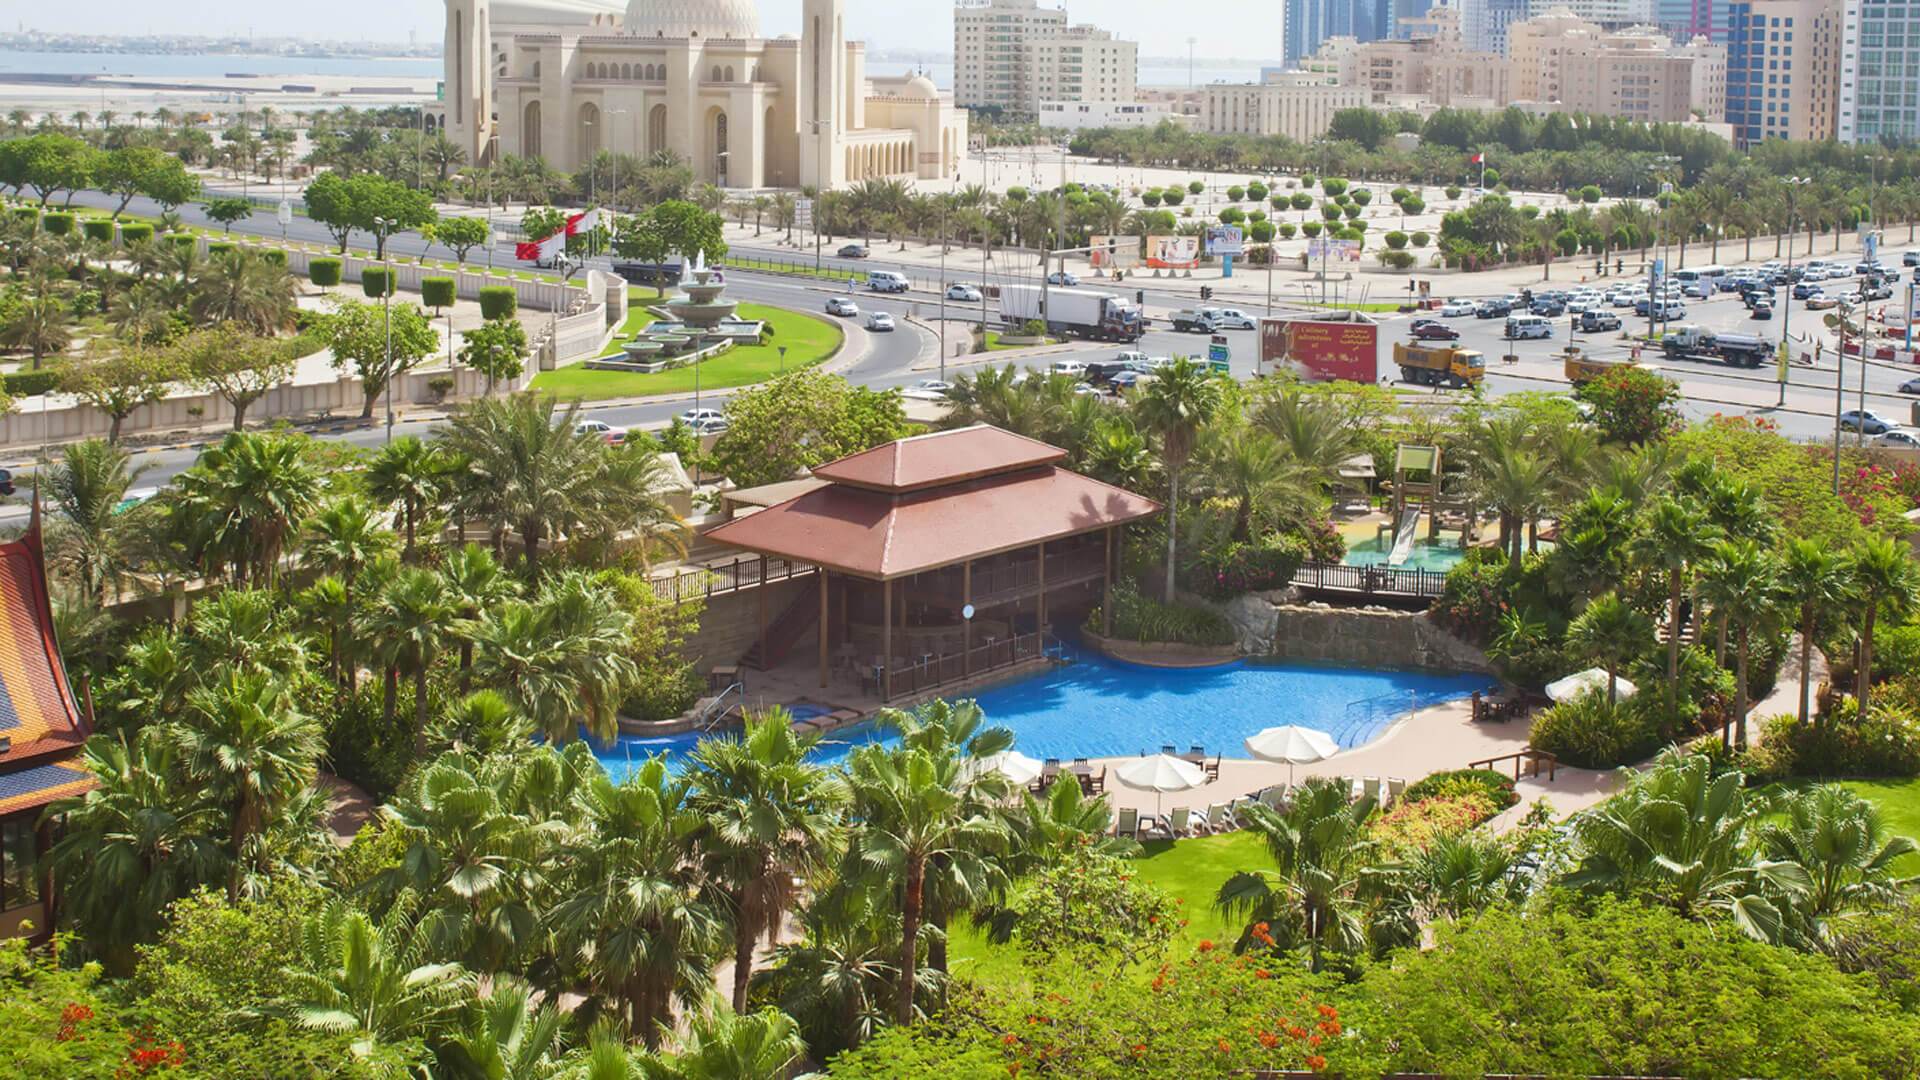 Gulf Hotel Bahrain Aerial View